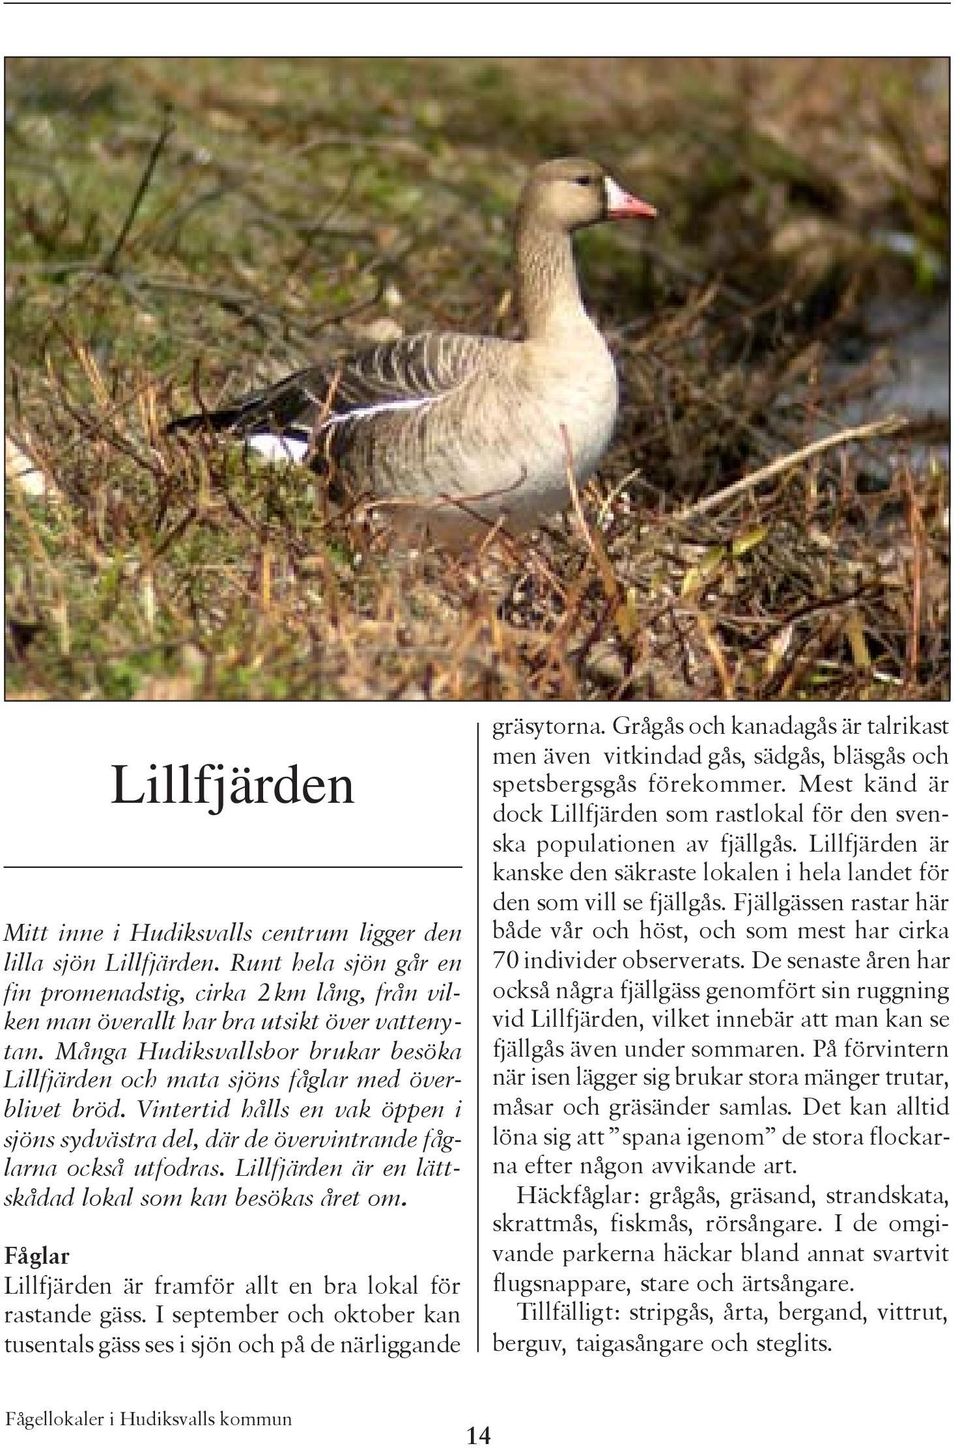 Lillfjärden är en lättskådad lokal som kan besökas året om. Fåglar Lillfjärden är framför allt en bra lokal för rastande gäss.